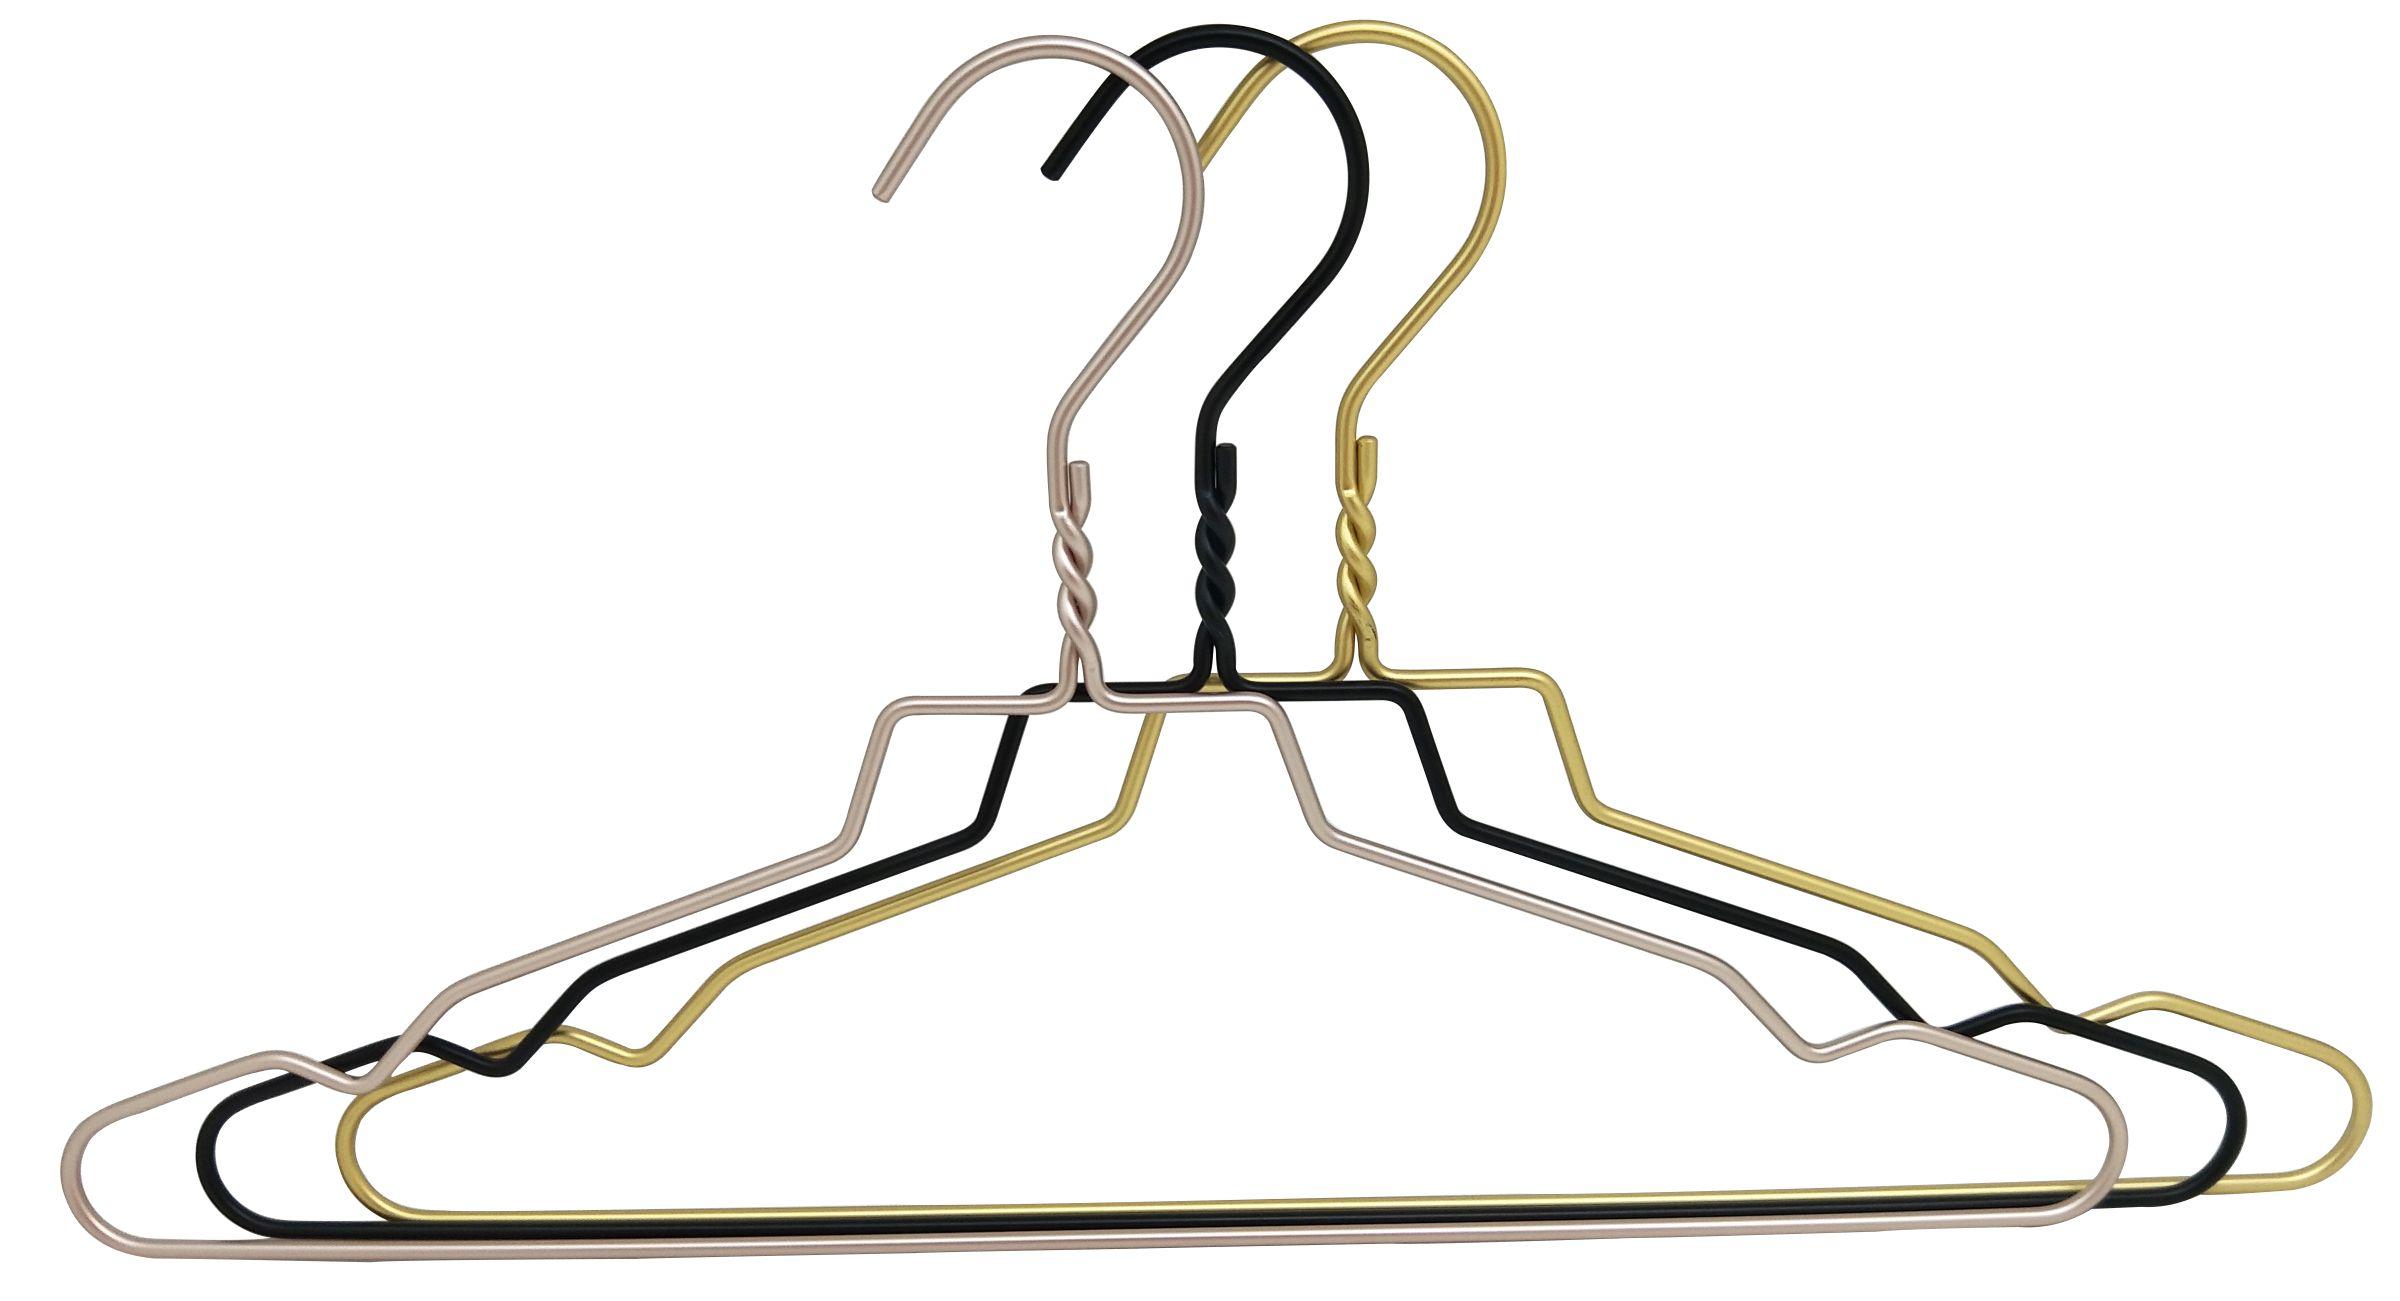 Kleiderbügelset Wire aus Aluminium - Goldfarben/Schwarz, MODERN, Metall (24/43cm) - Modern Living